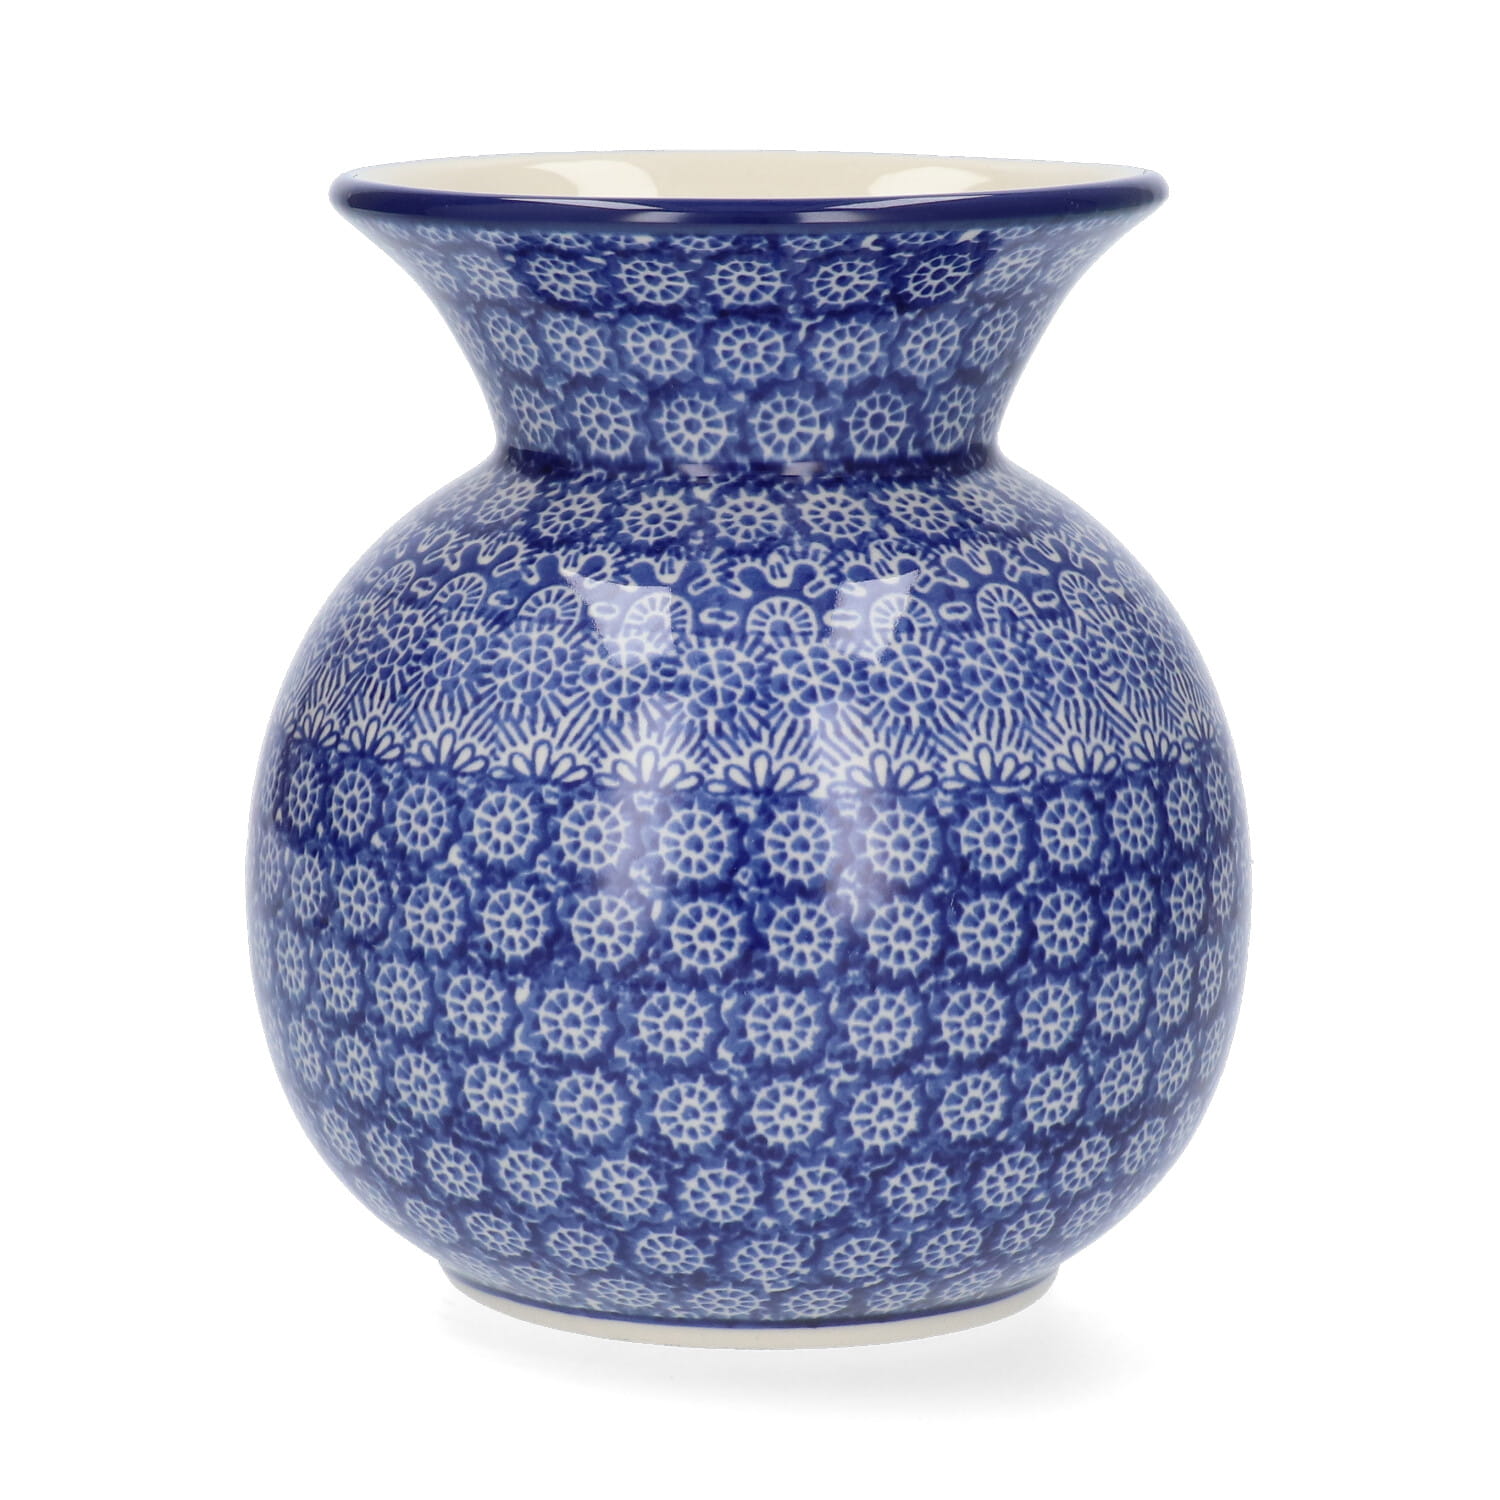 Bunzlau Castle Keramik Vase 1,63 l - Lace